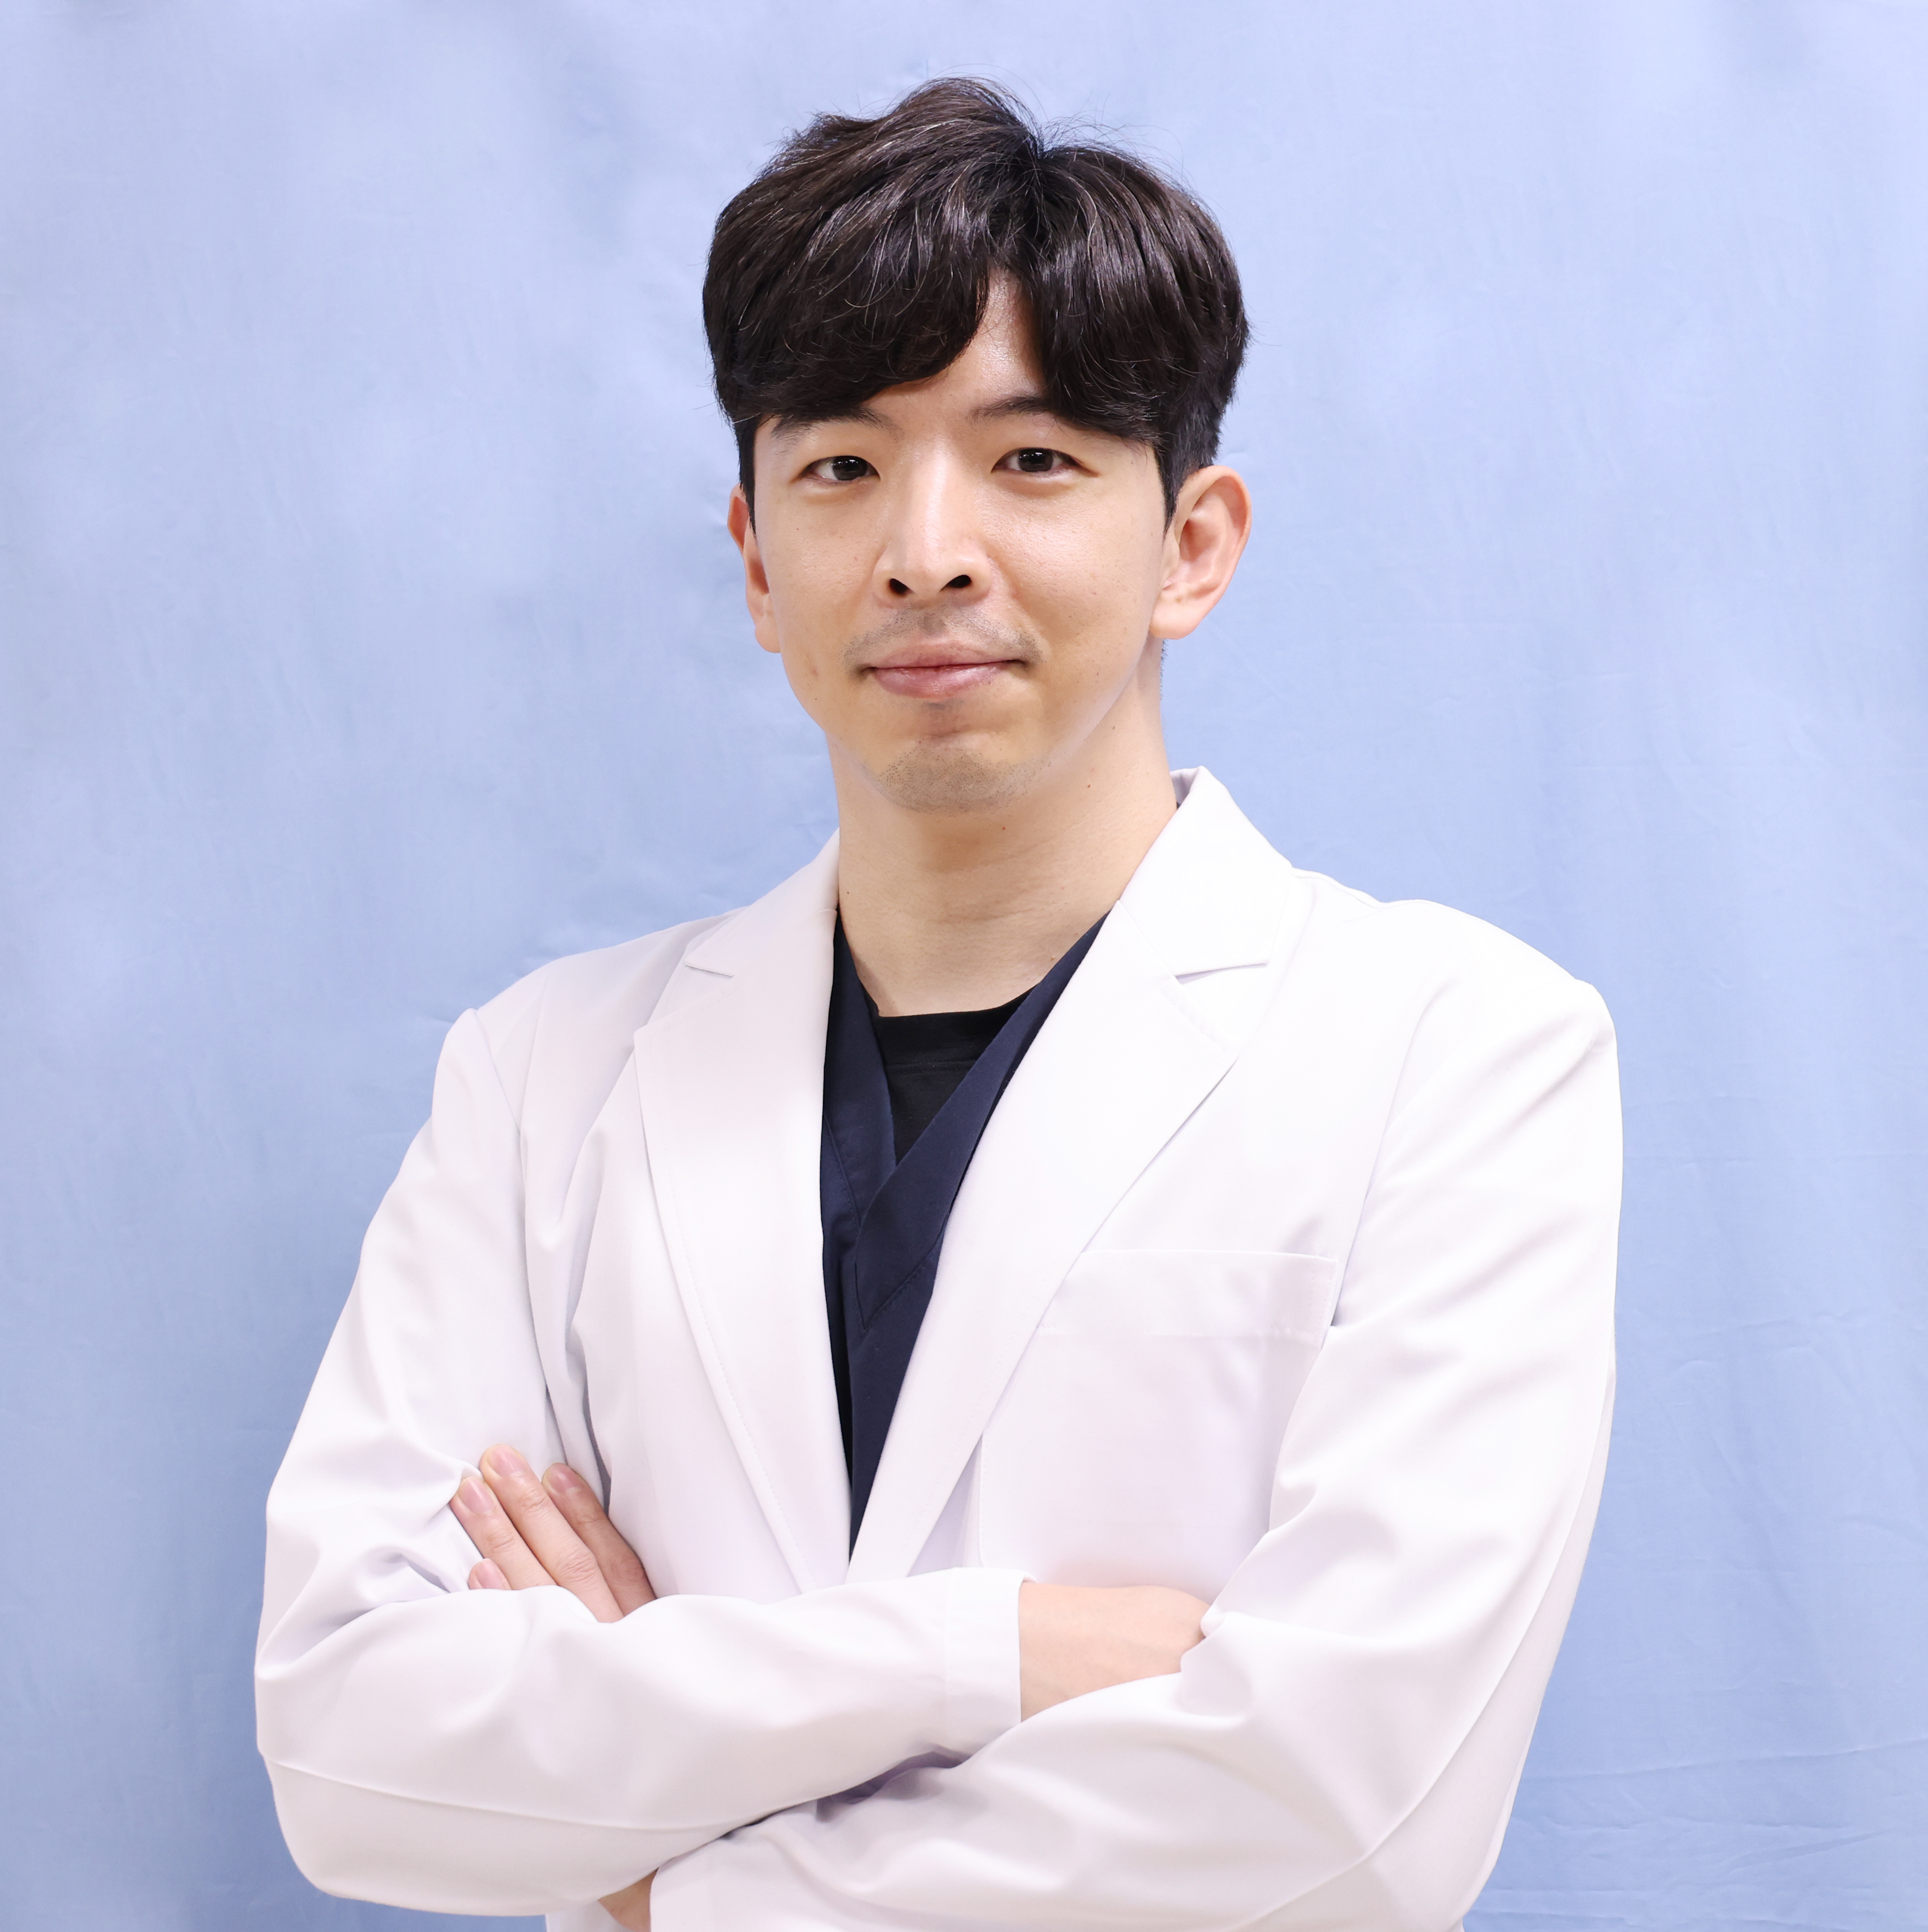 김동언 교수 프로필